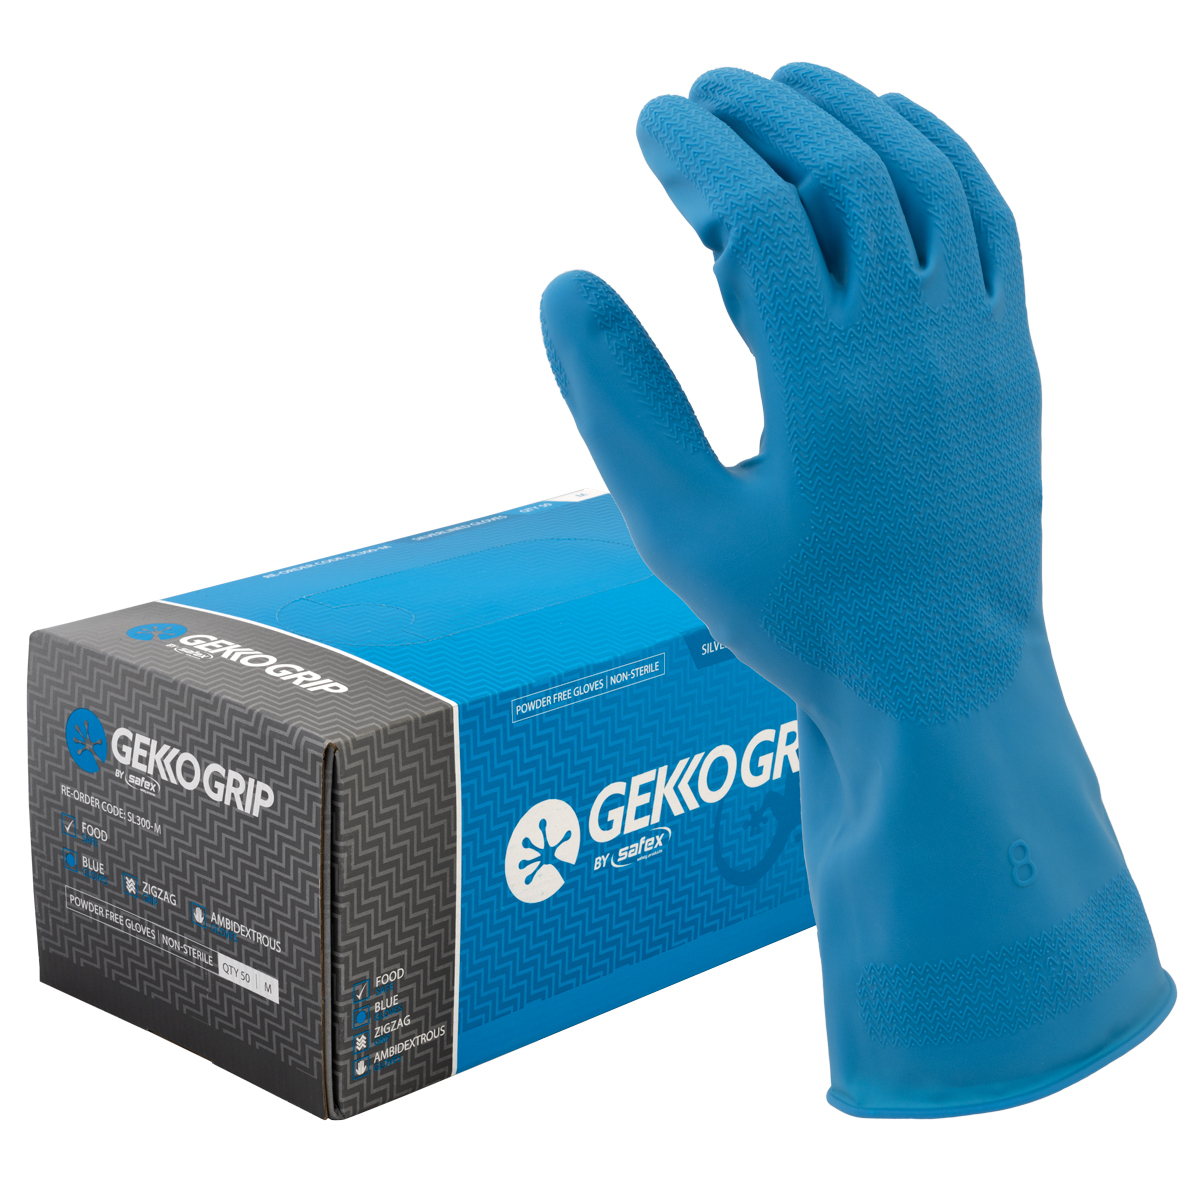 Gekko Grip Silverlined Gloves